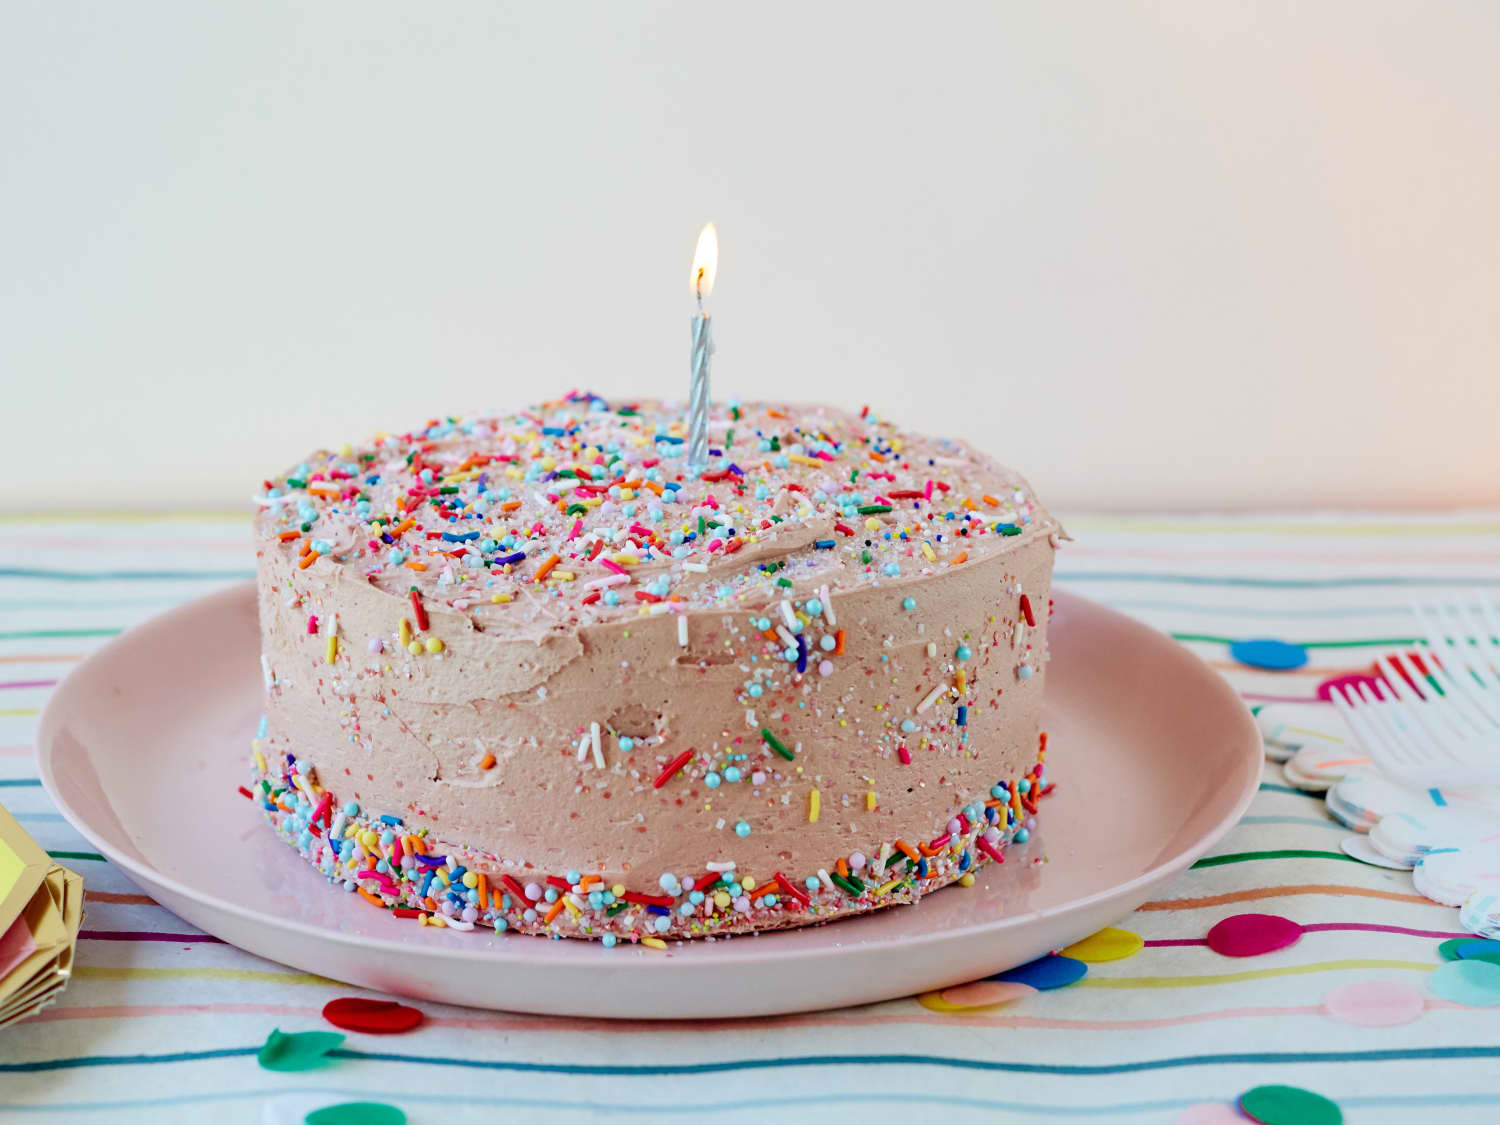 Top birthday cakes to decorate yourself Những chiếc bánh sinh nhật để tự trang trí